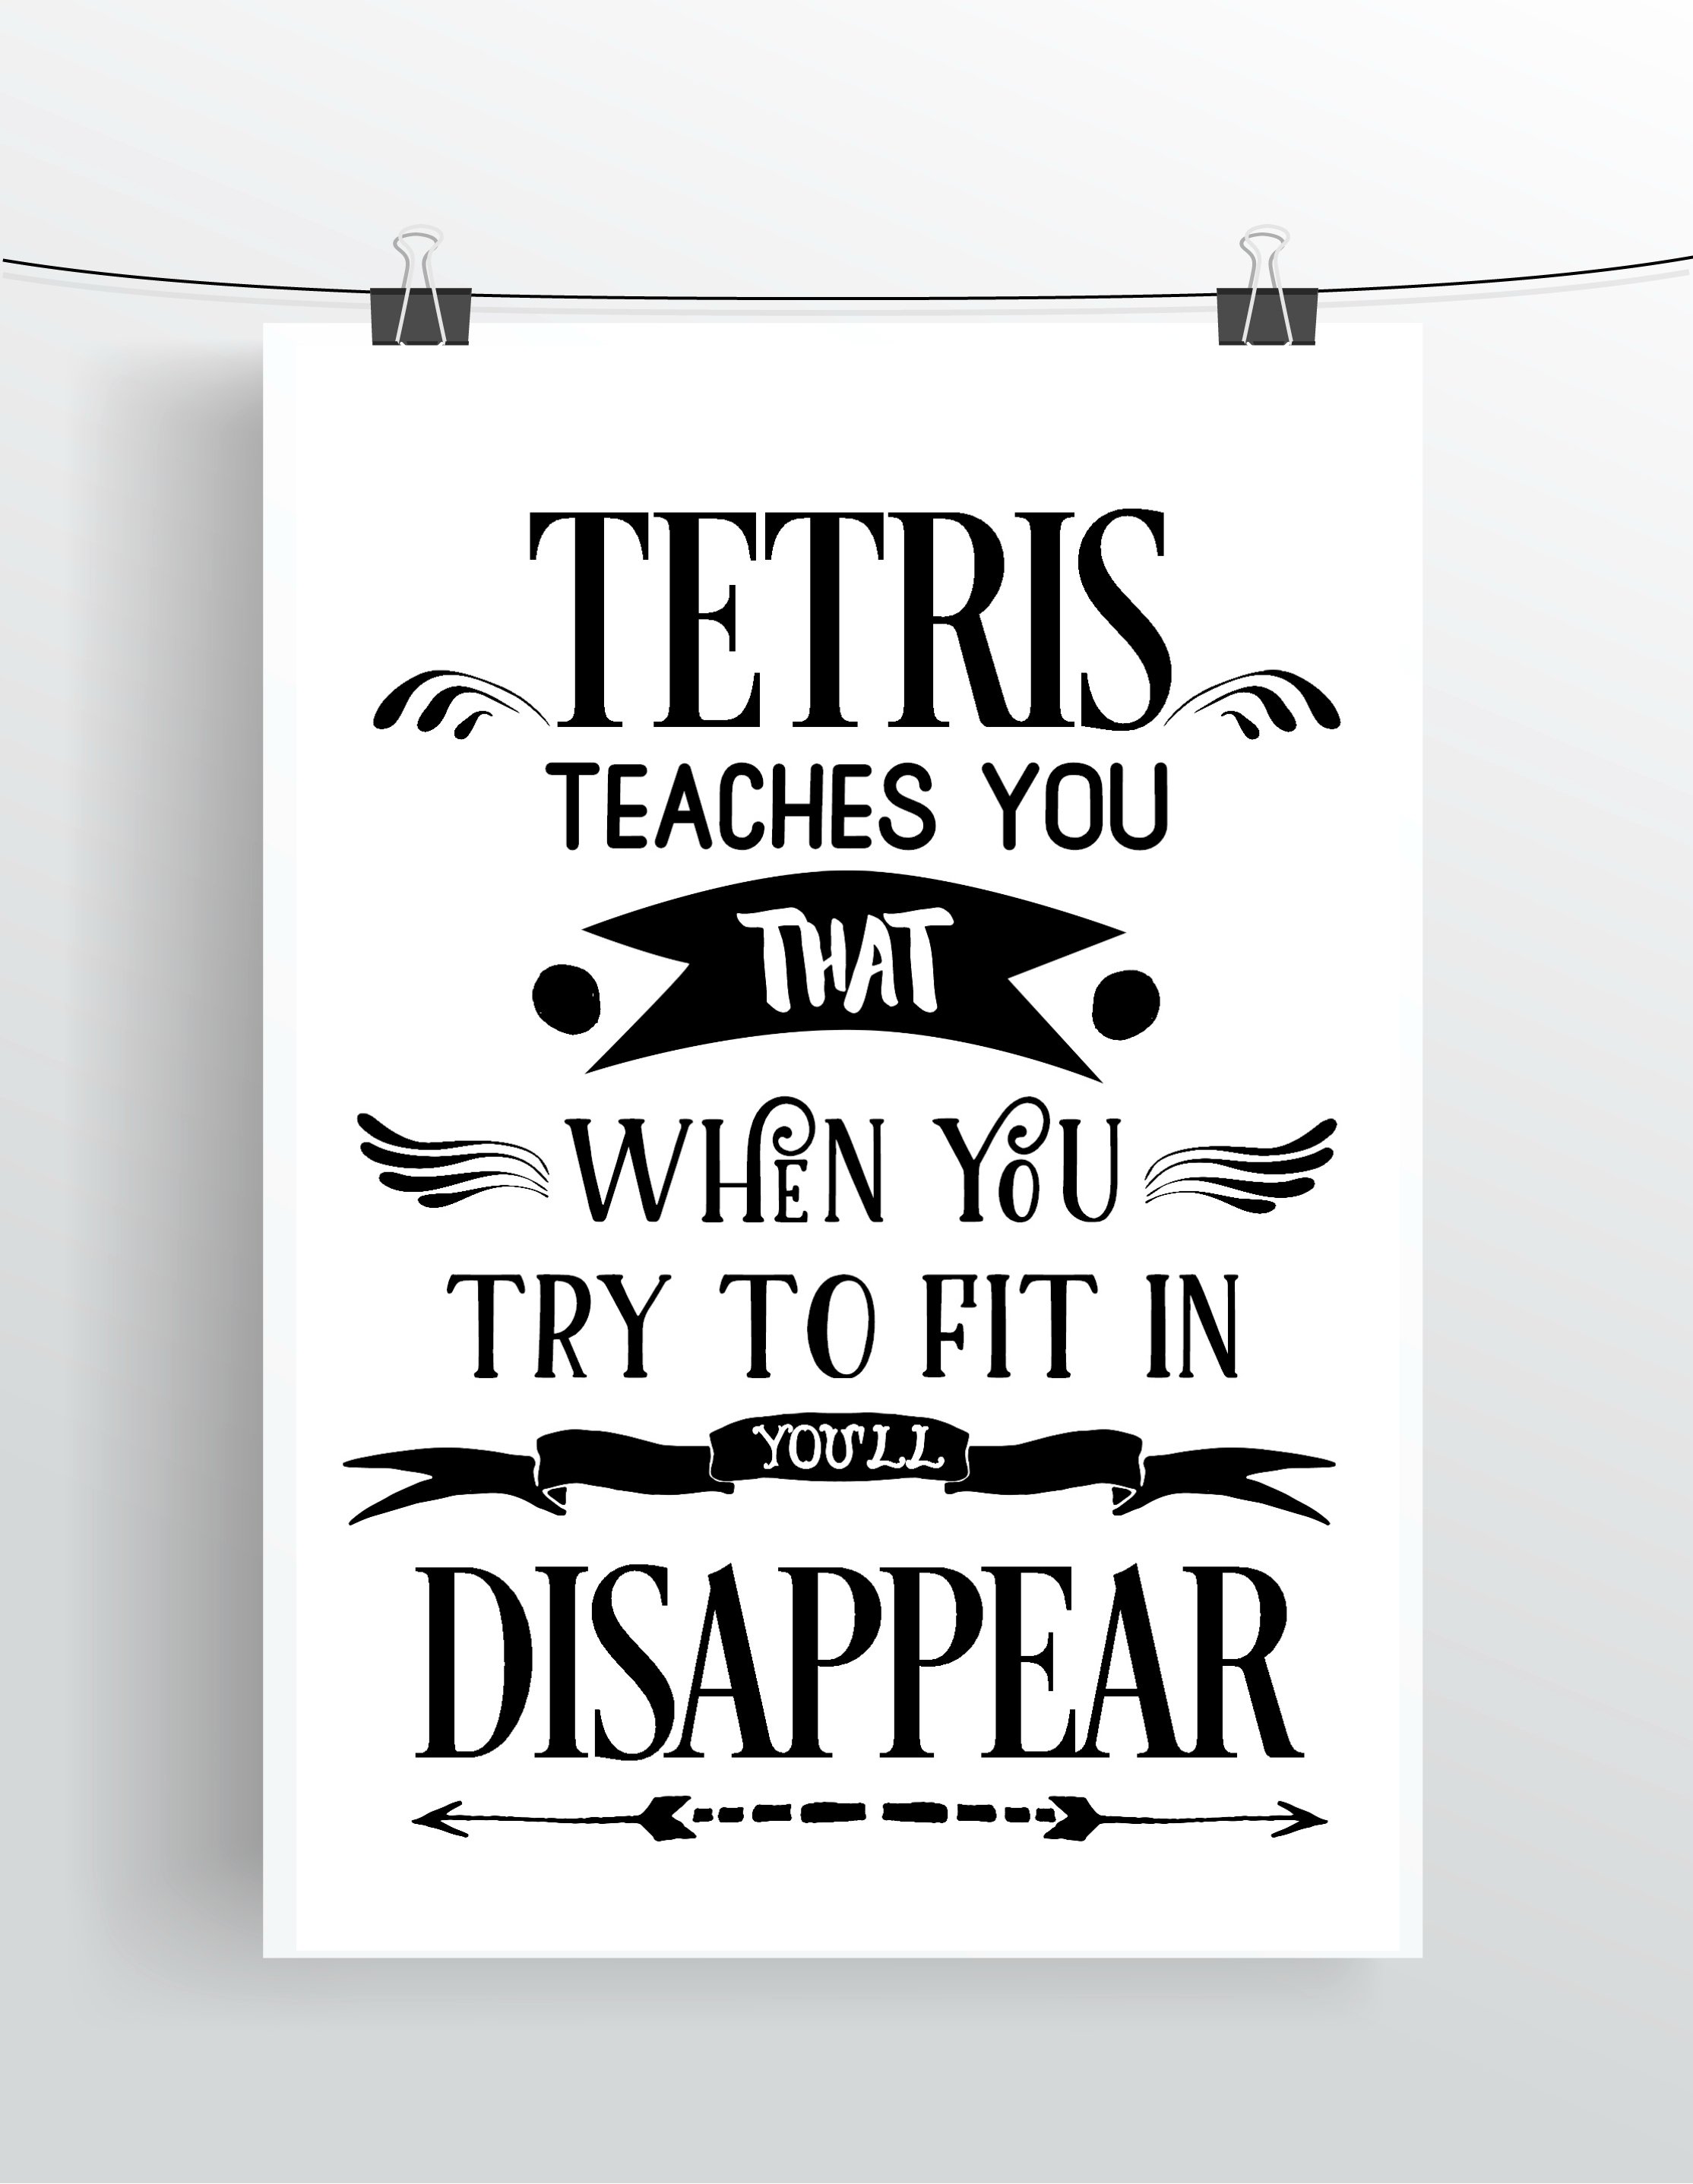 Tetris teaches you